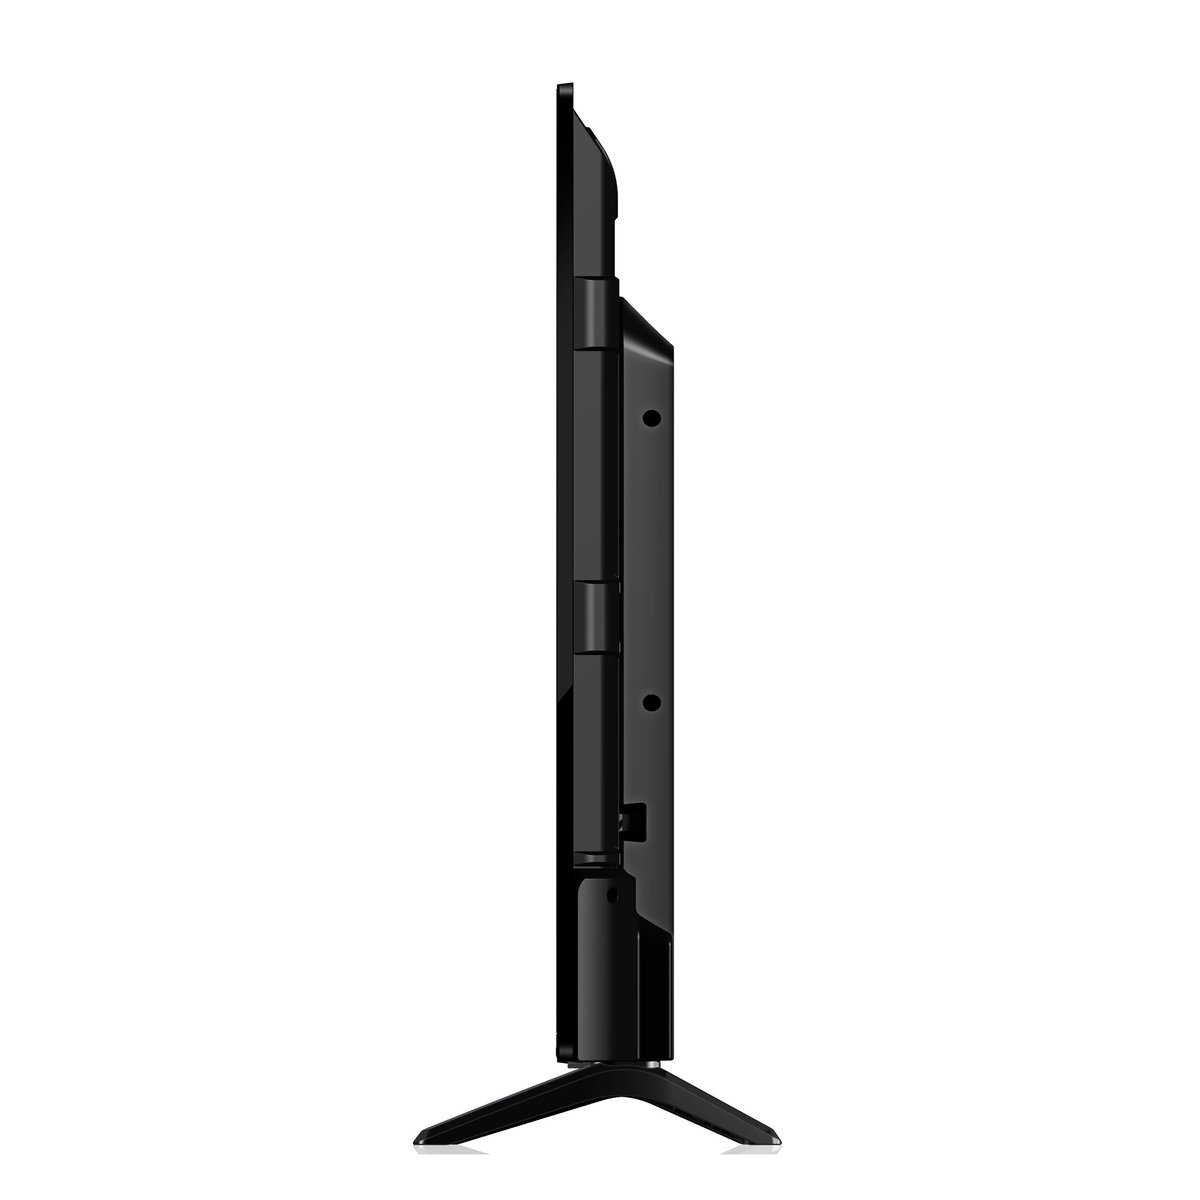 Ikon 50 inches 4K Smart LED TV, Black, IK-VS50